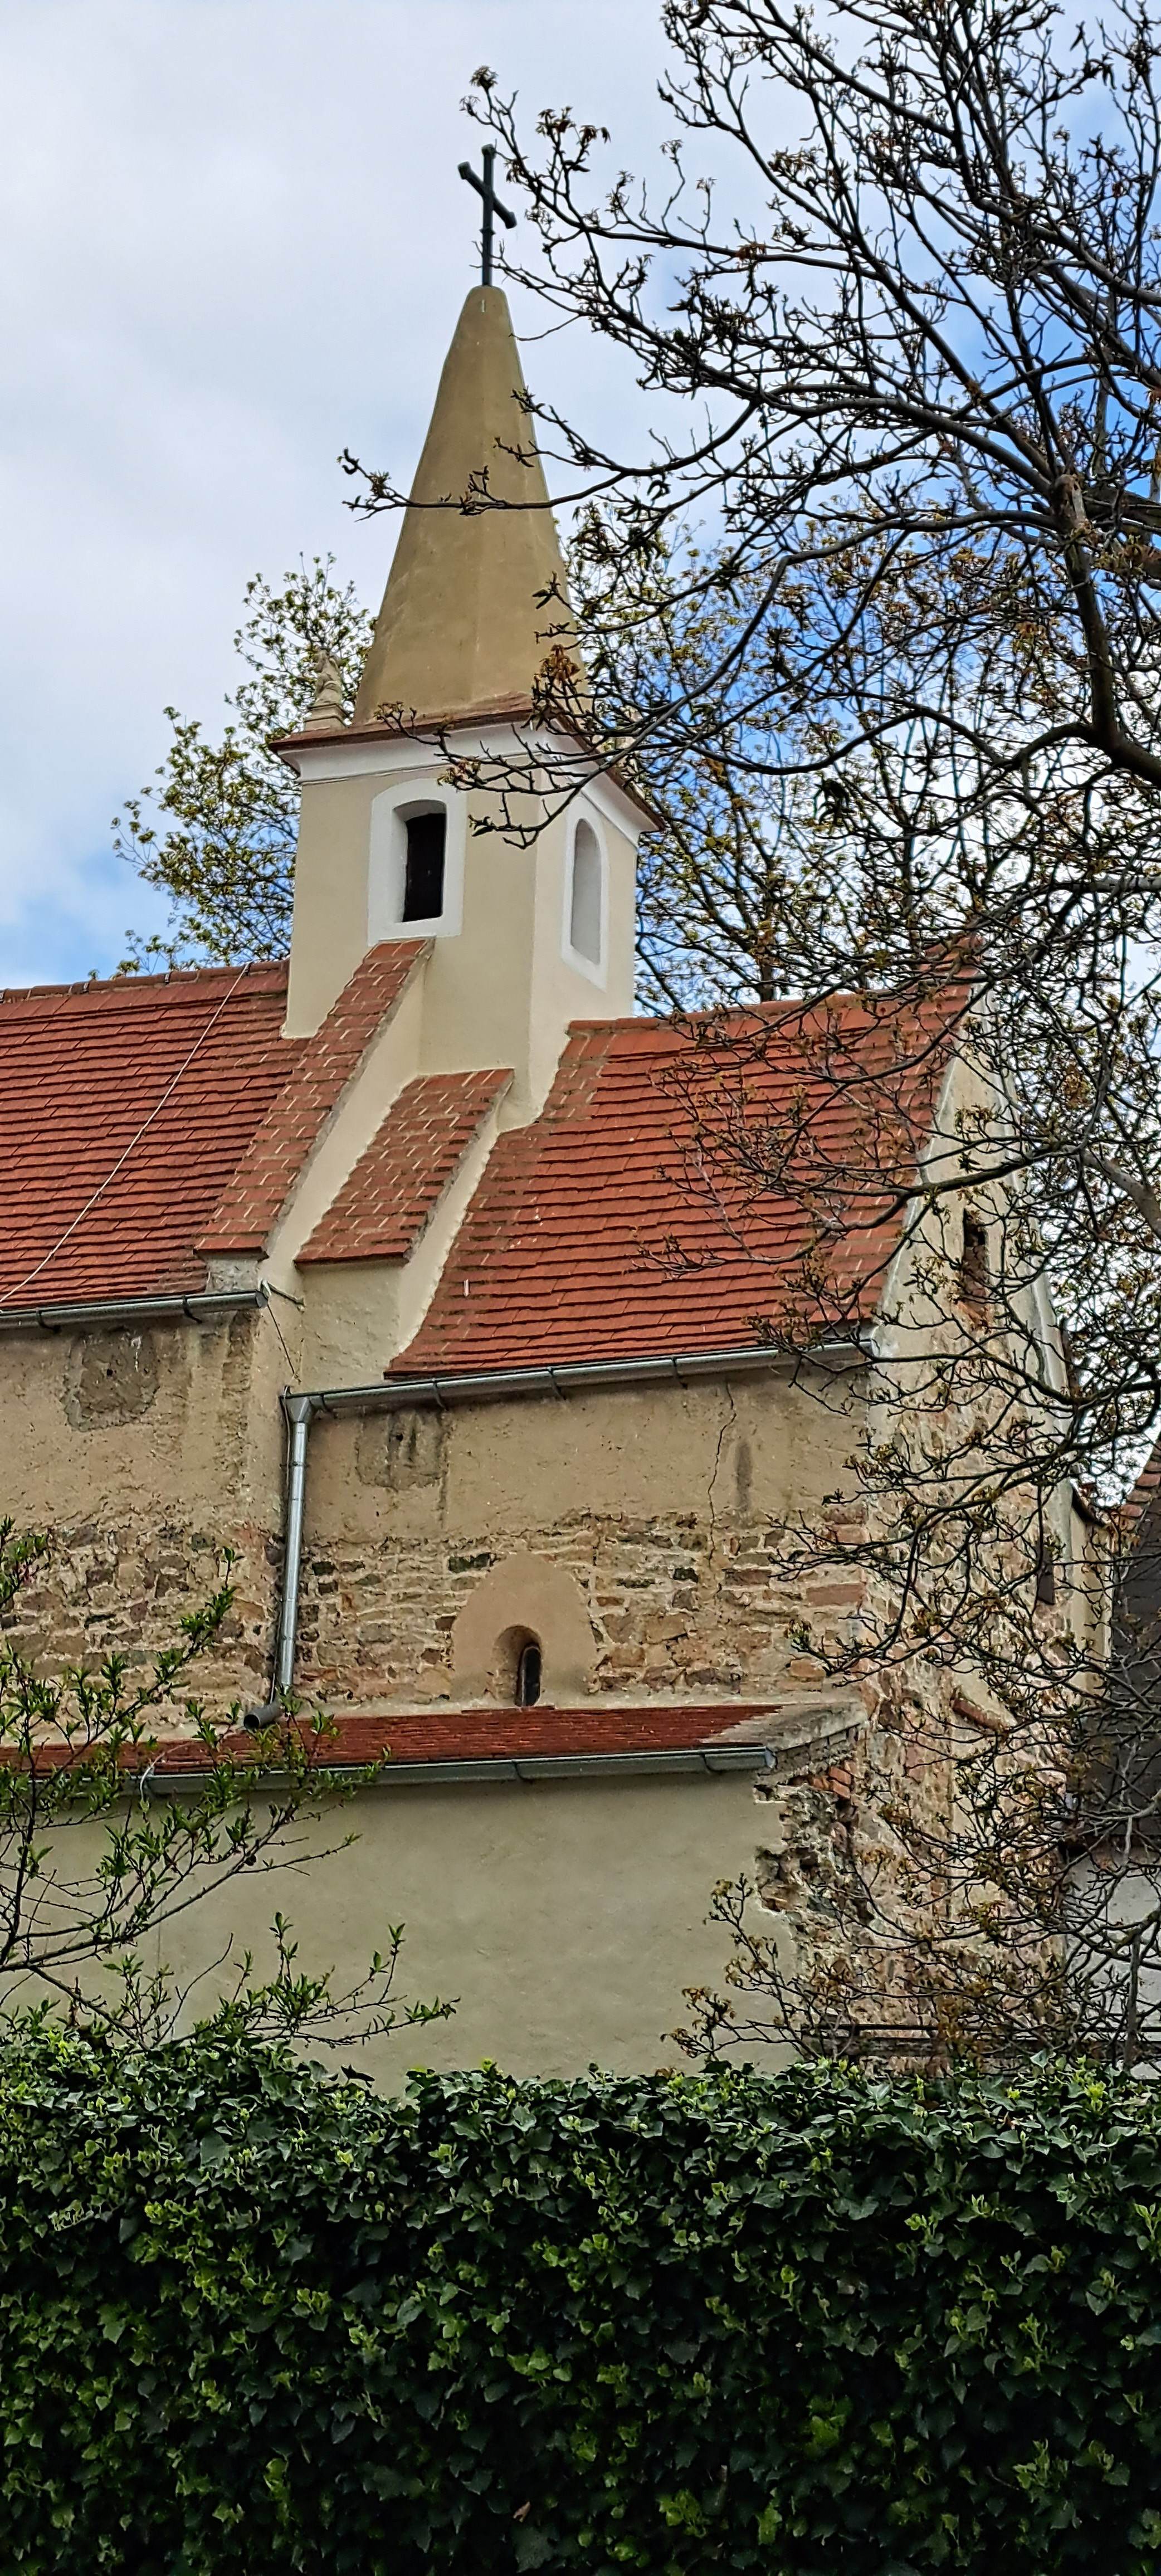 Margaretenkapelle